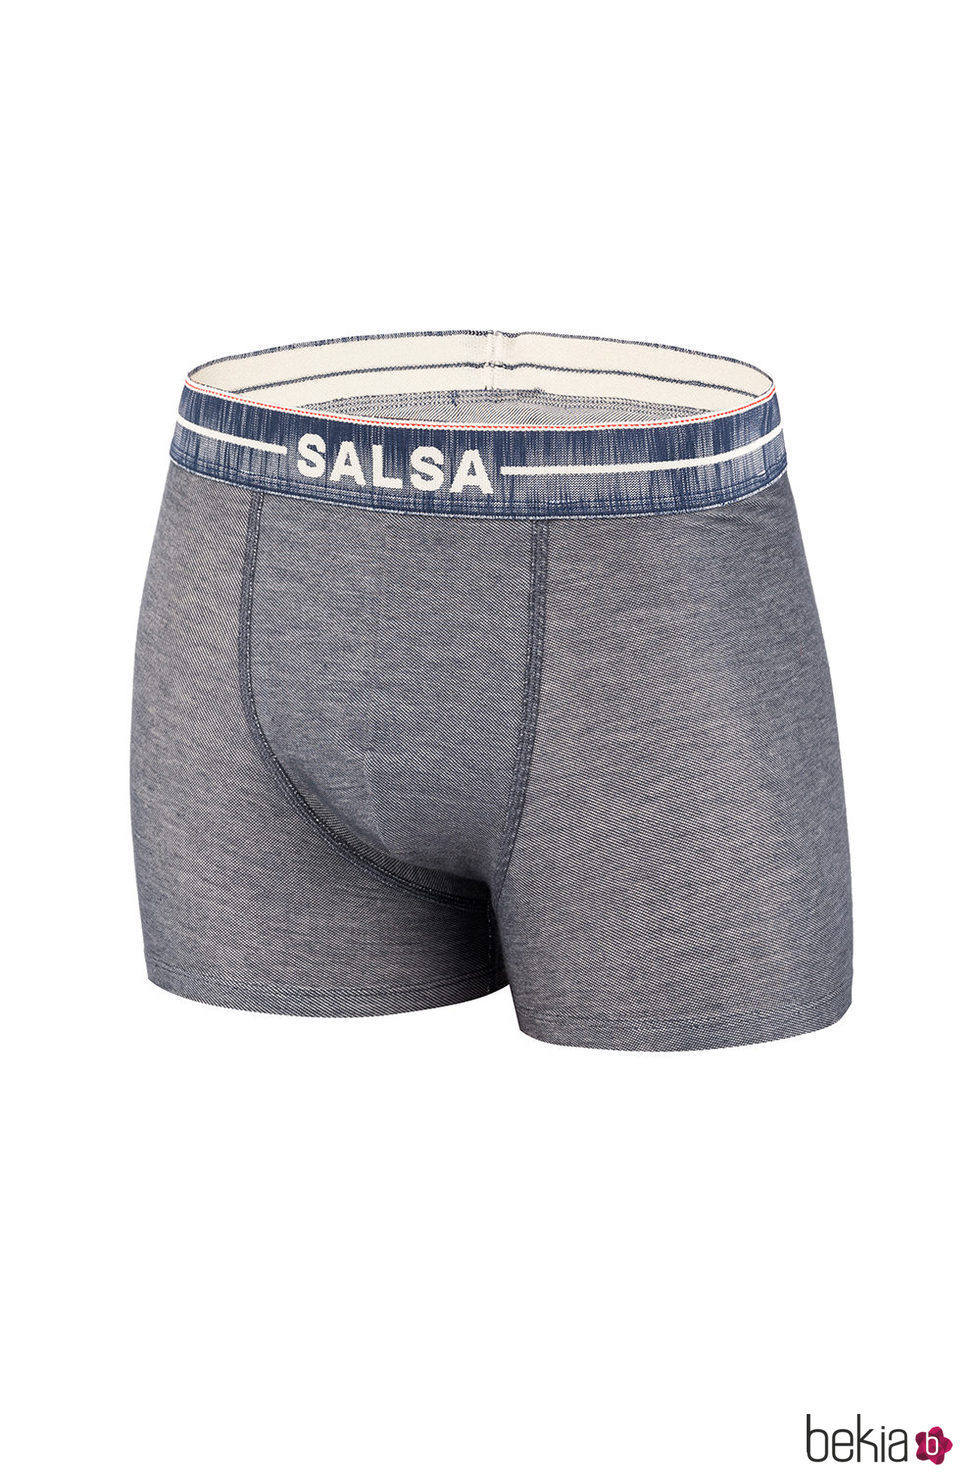 Calzoncillo gris claro de la colección de accesorios para la temporada de primavera/verano 2018 de Salsa.